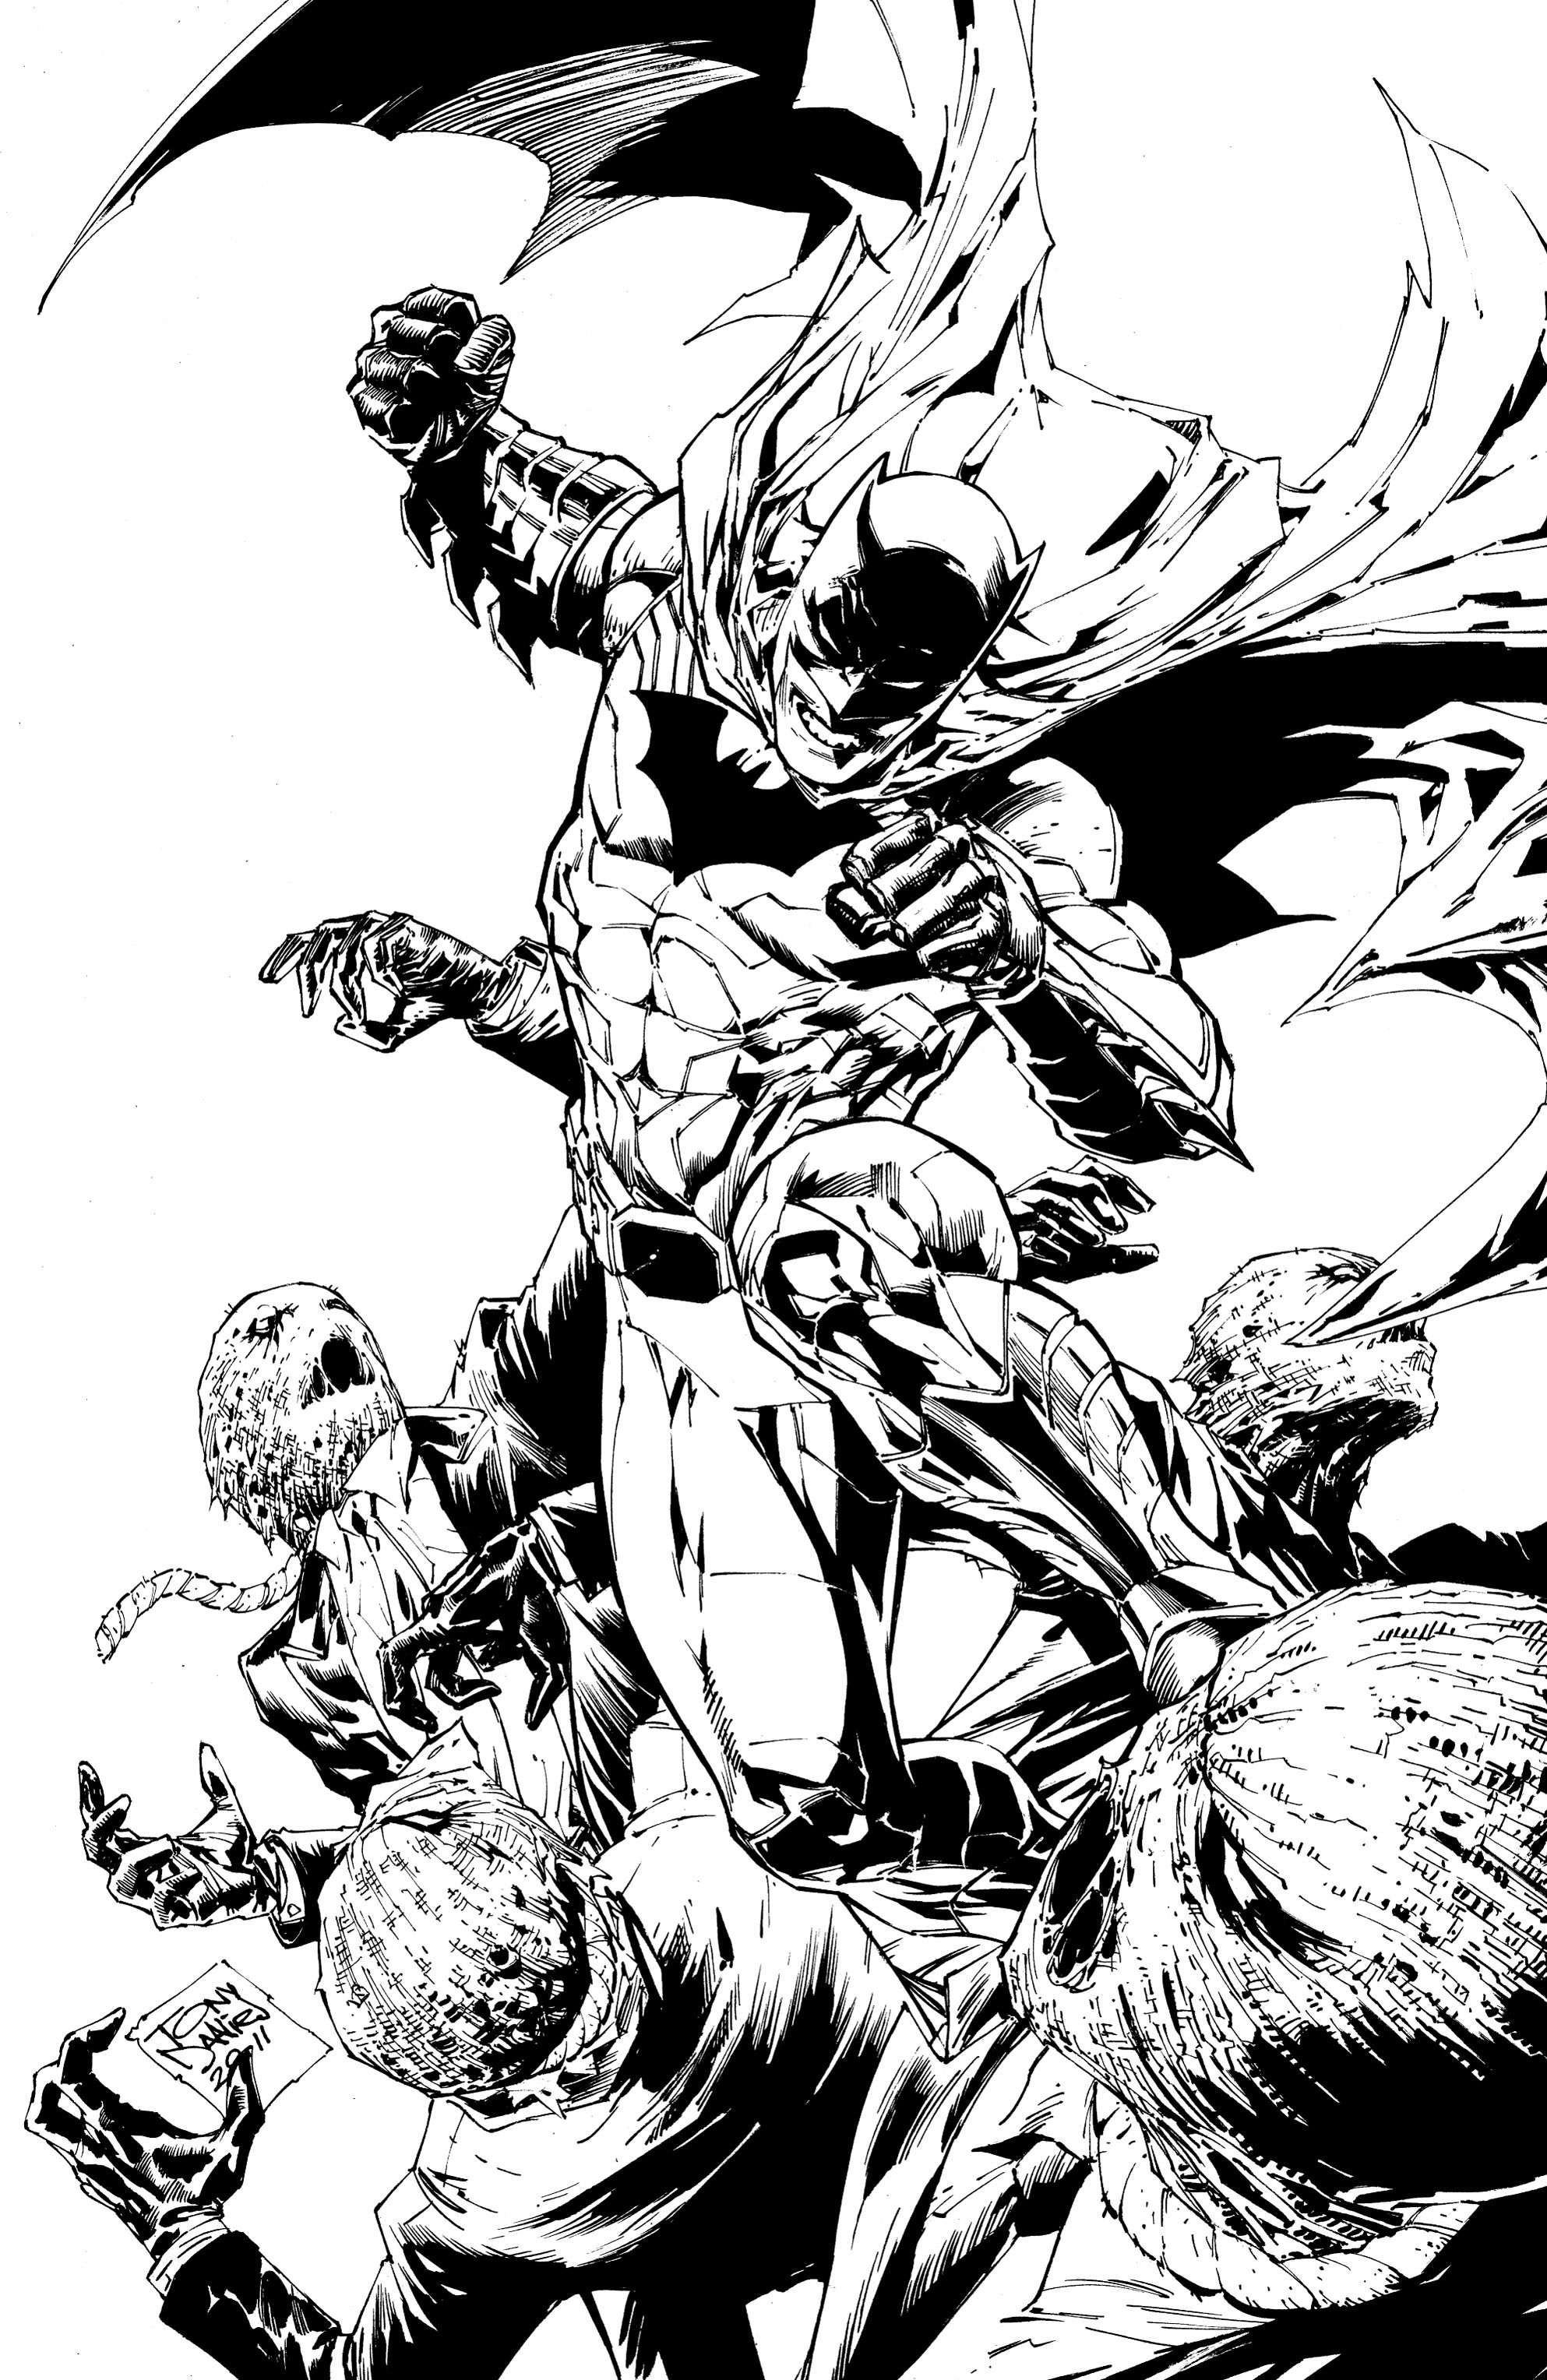 Read online Batman: Detective Comics comic -  Issue # TPB 2 - 6